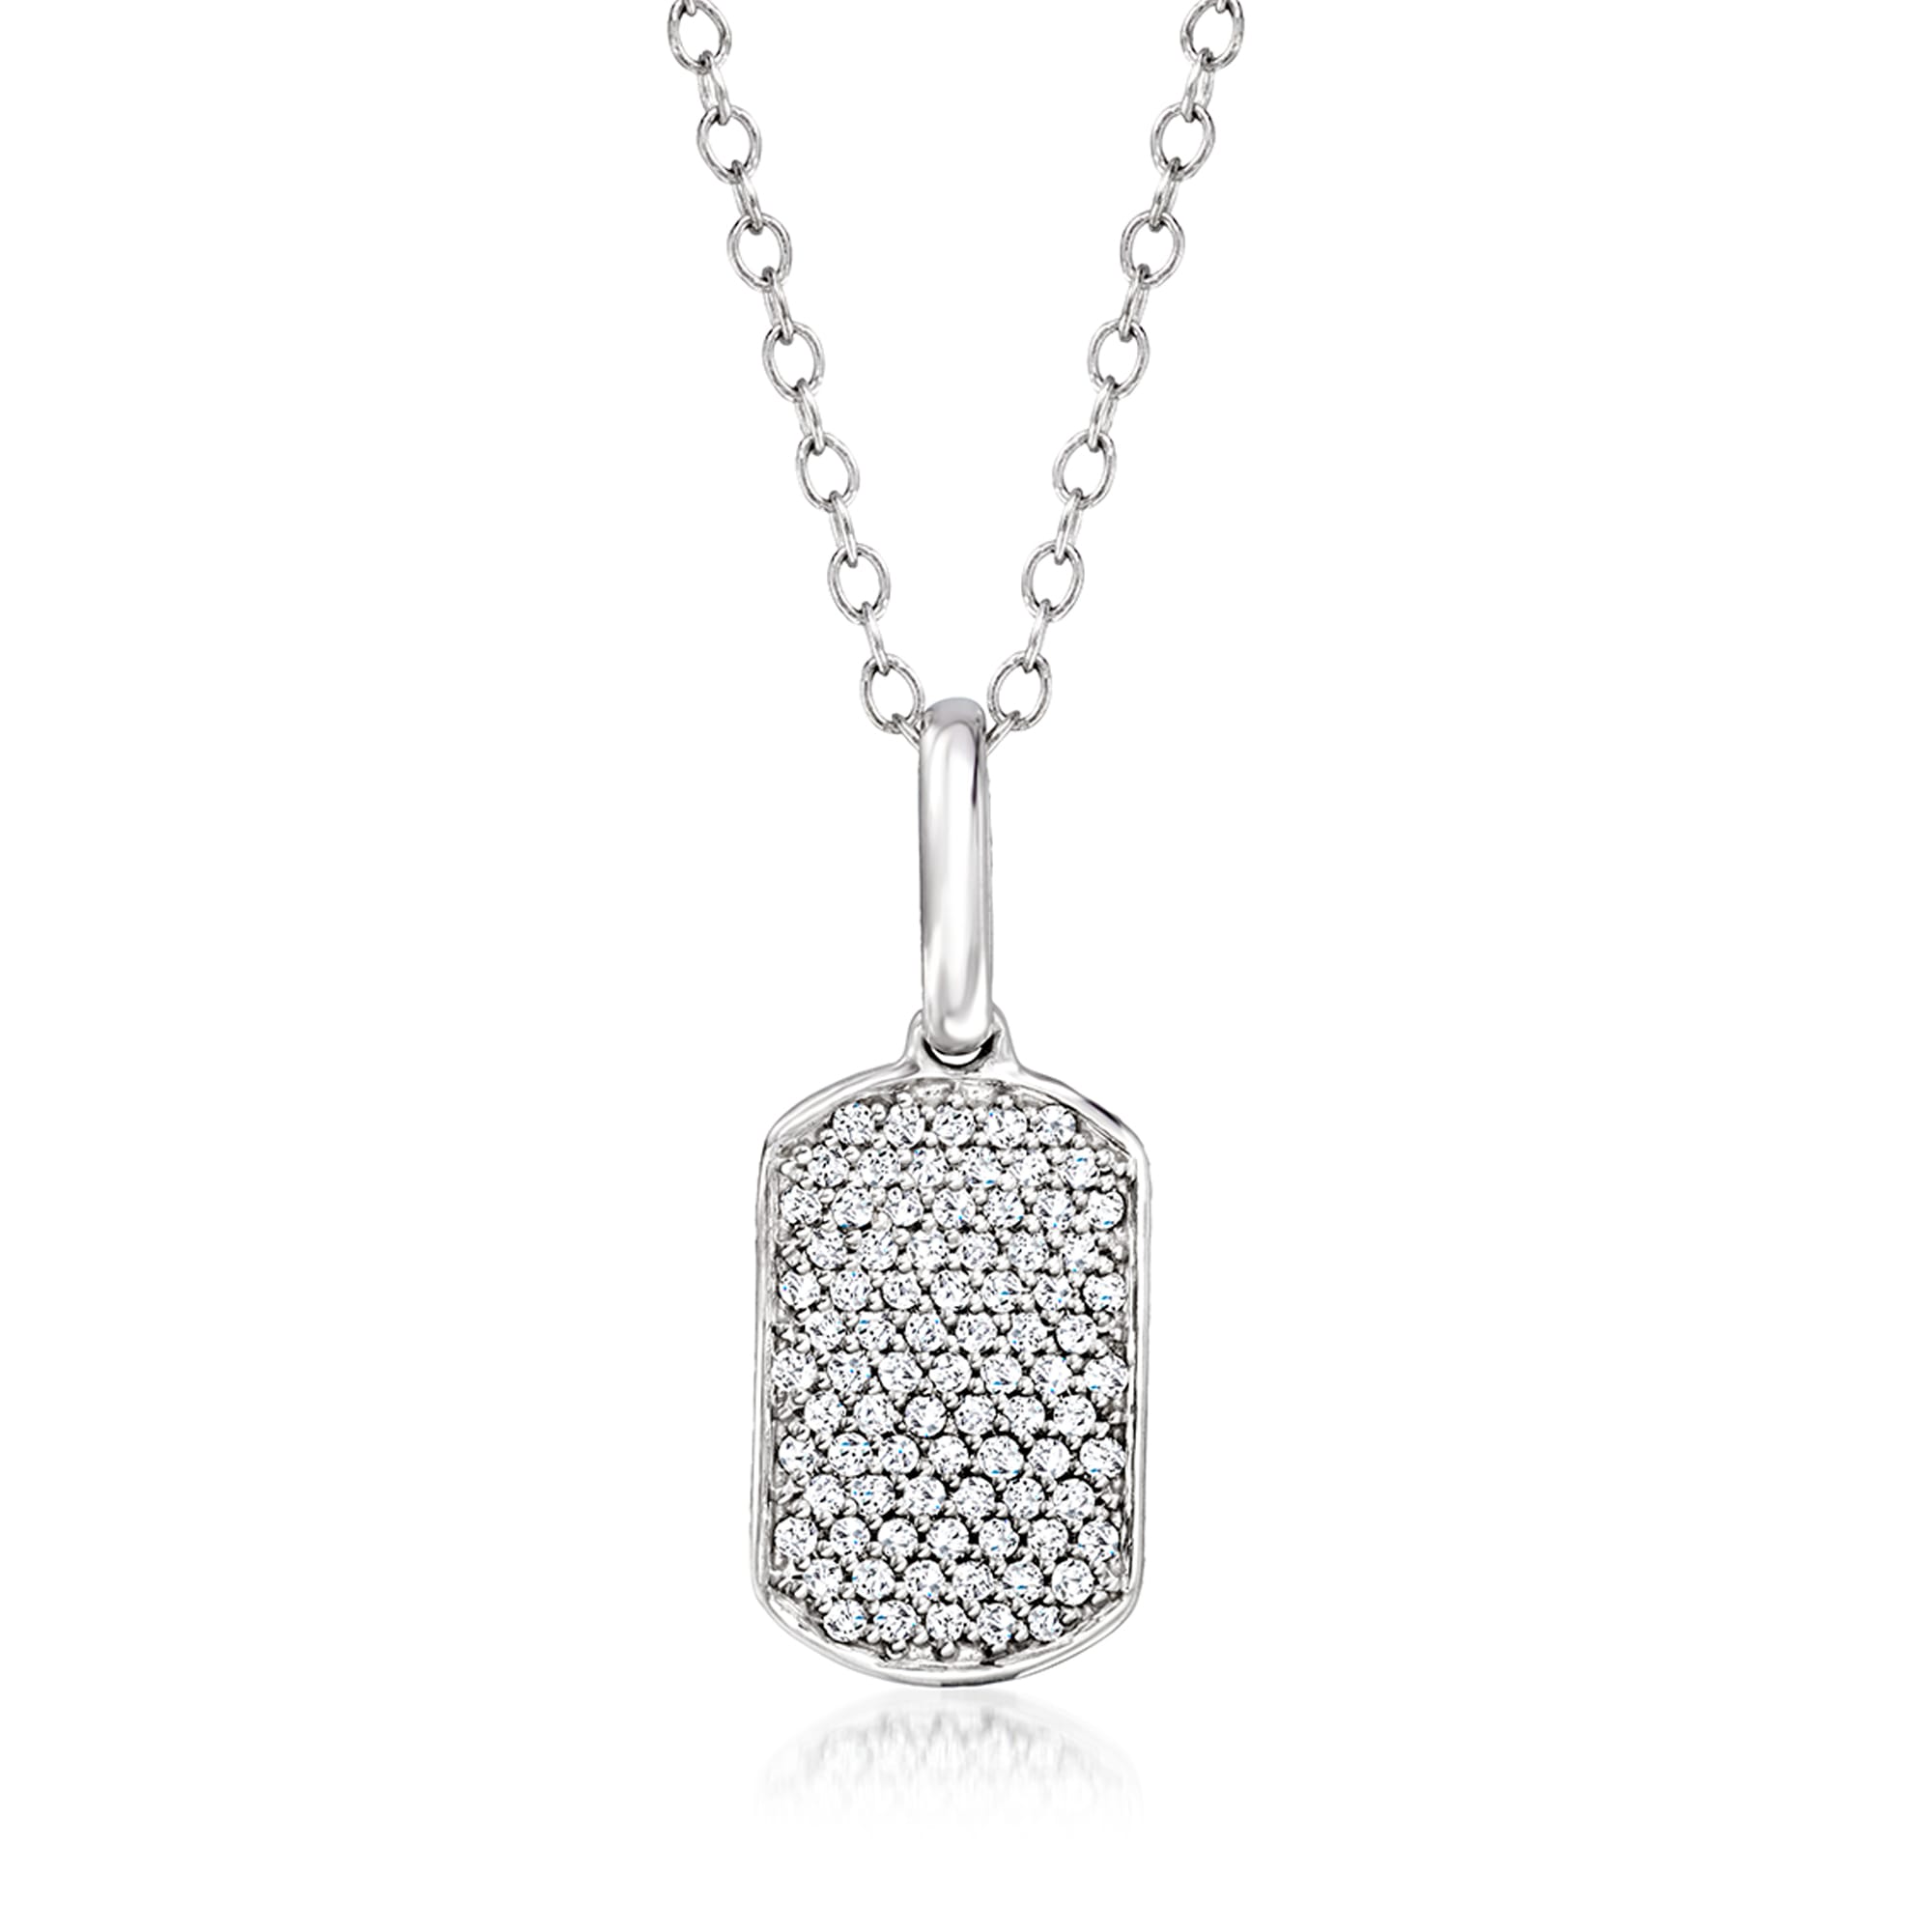 Diamond Tag Necklace. 16